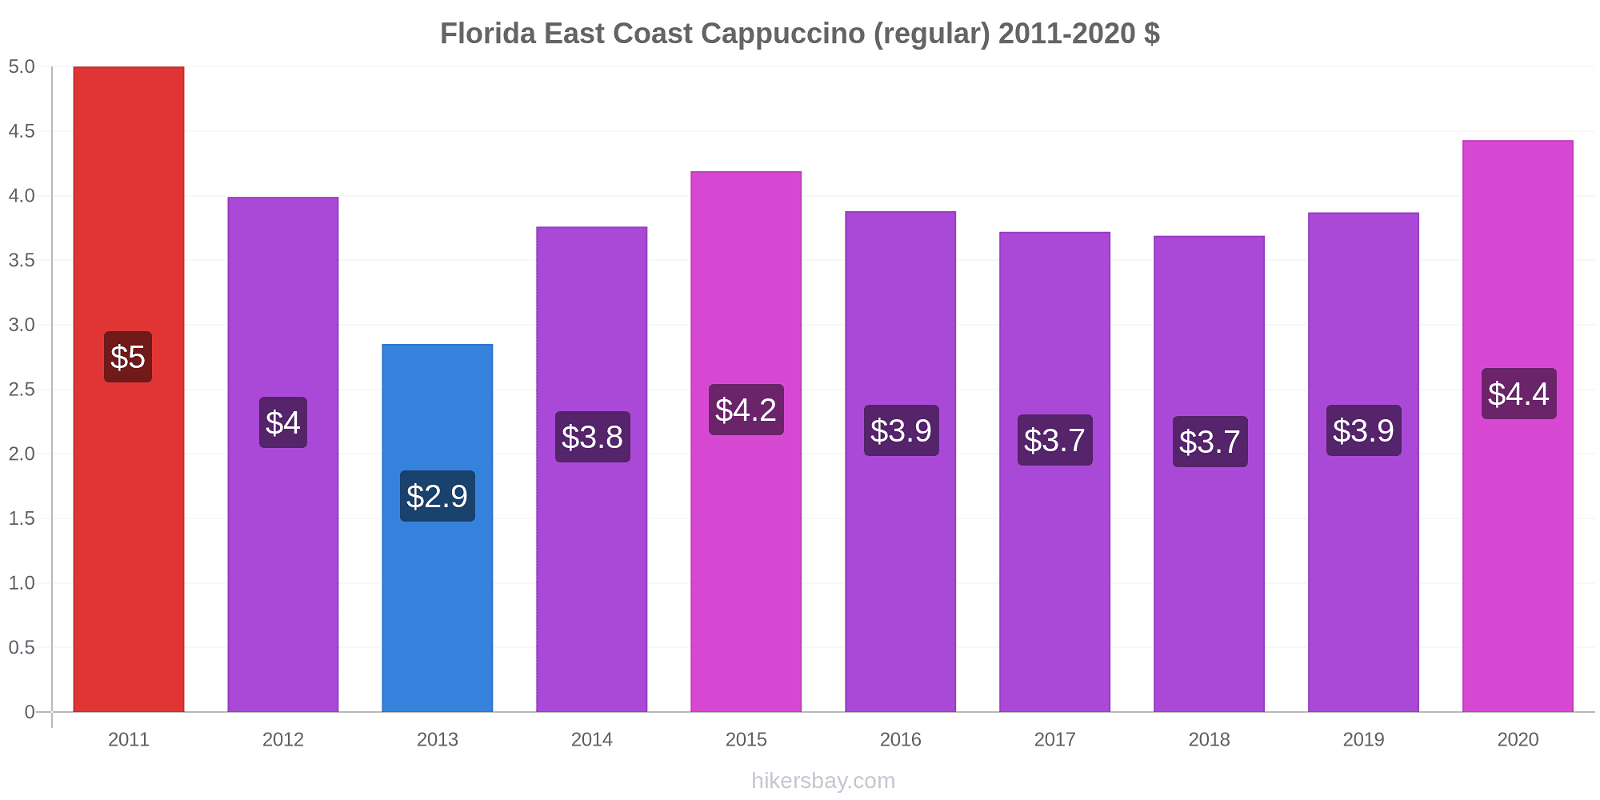 Florida East Coast price changes Cappuccino (regular) hikersbay.com